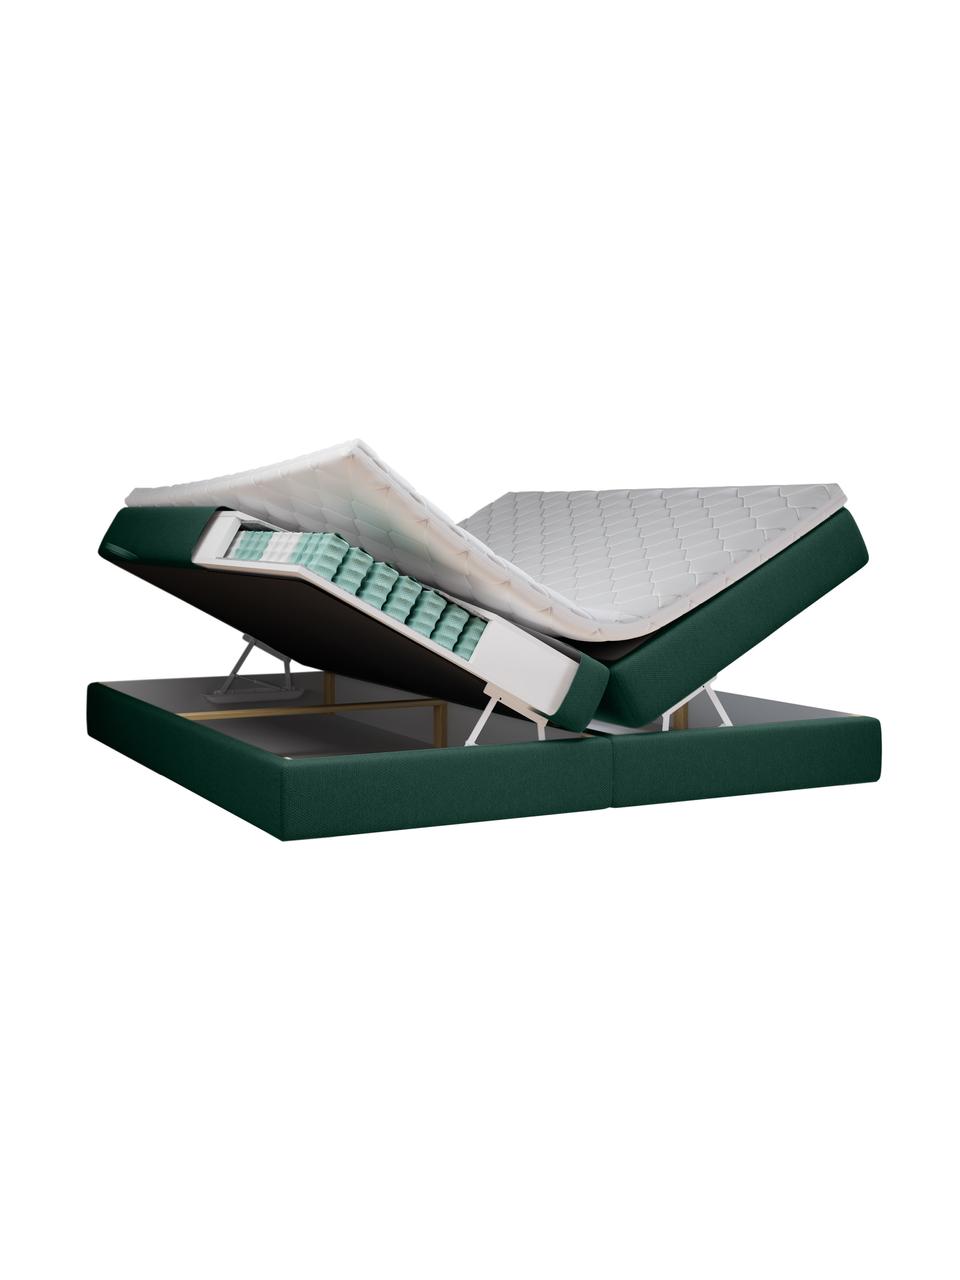 Prémiová zamatová boxspring posteľ s úložným priestorom Cube, Borovicová zelená, 140 x 200 cm, tvrdosť H3